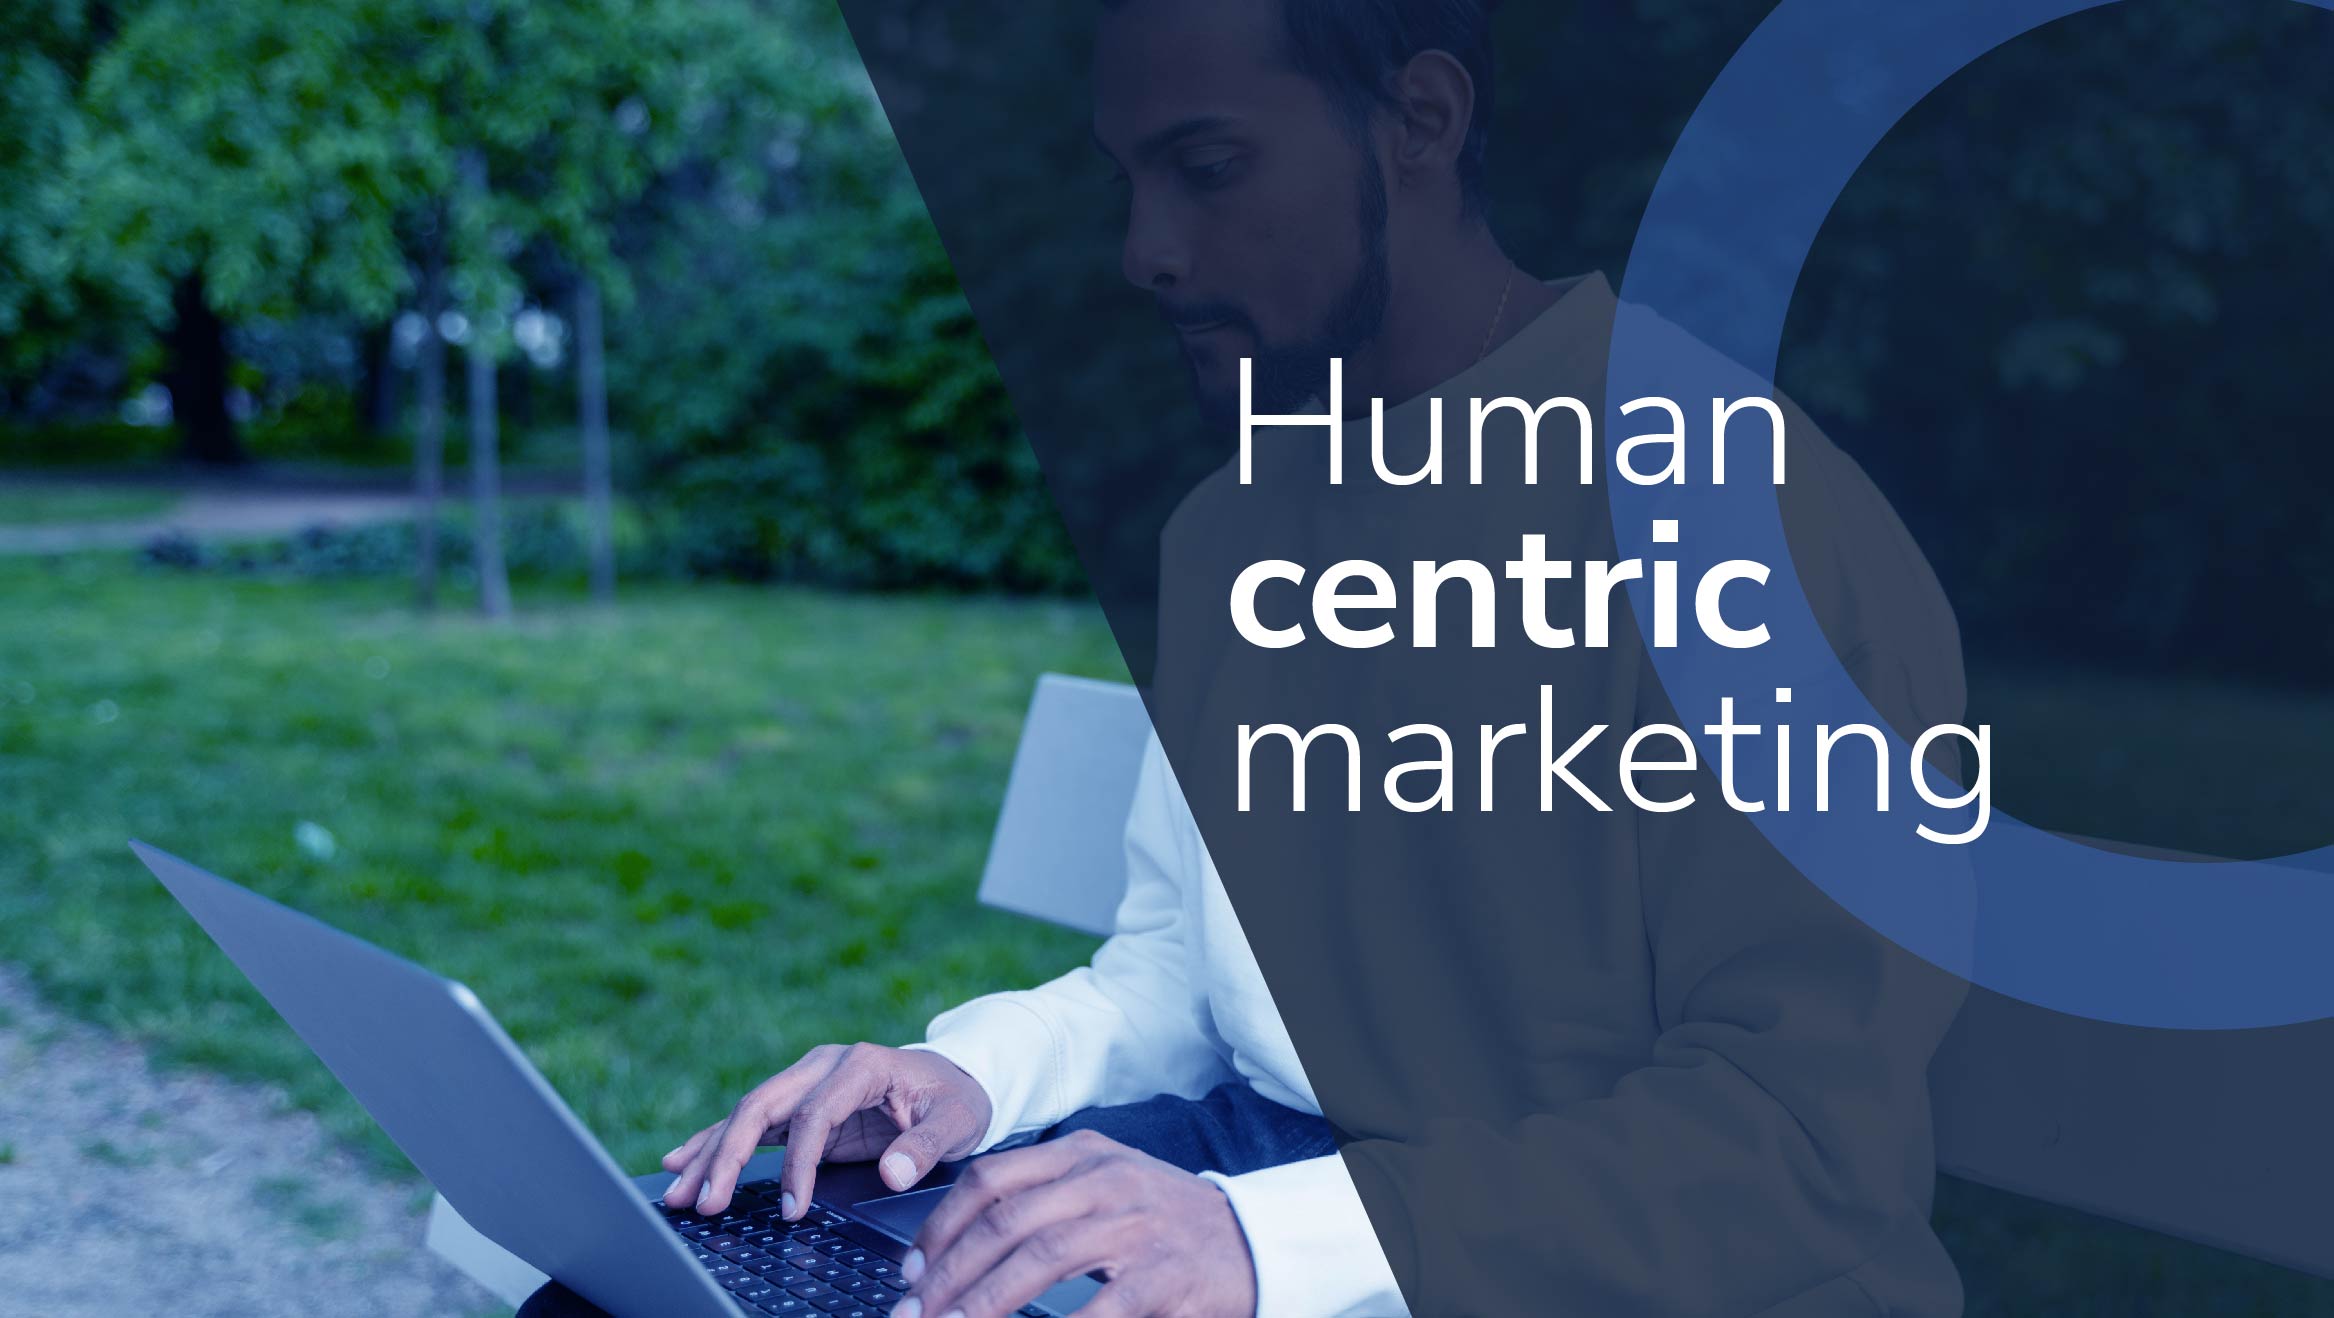 Human centric marketing: Cómo usar los datos a favor del cliente